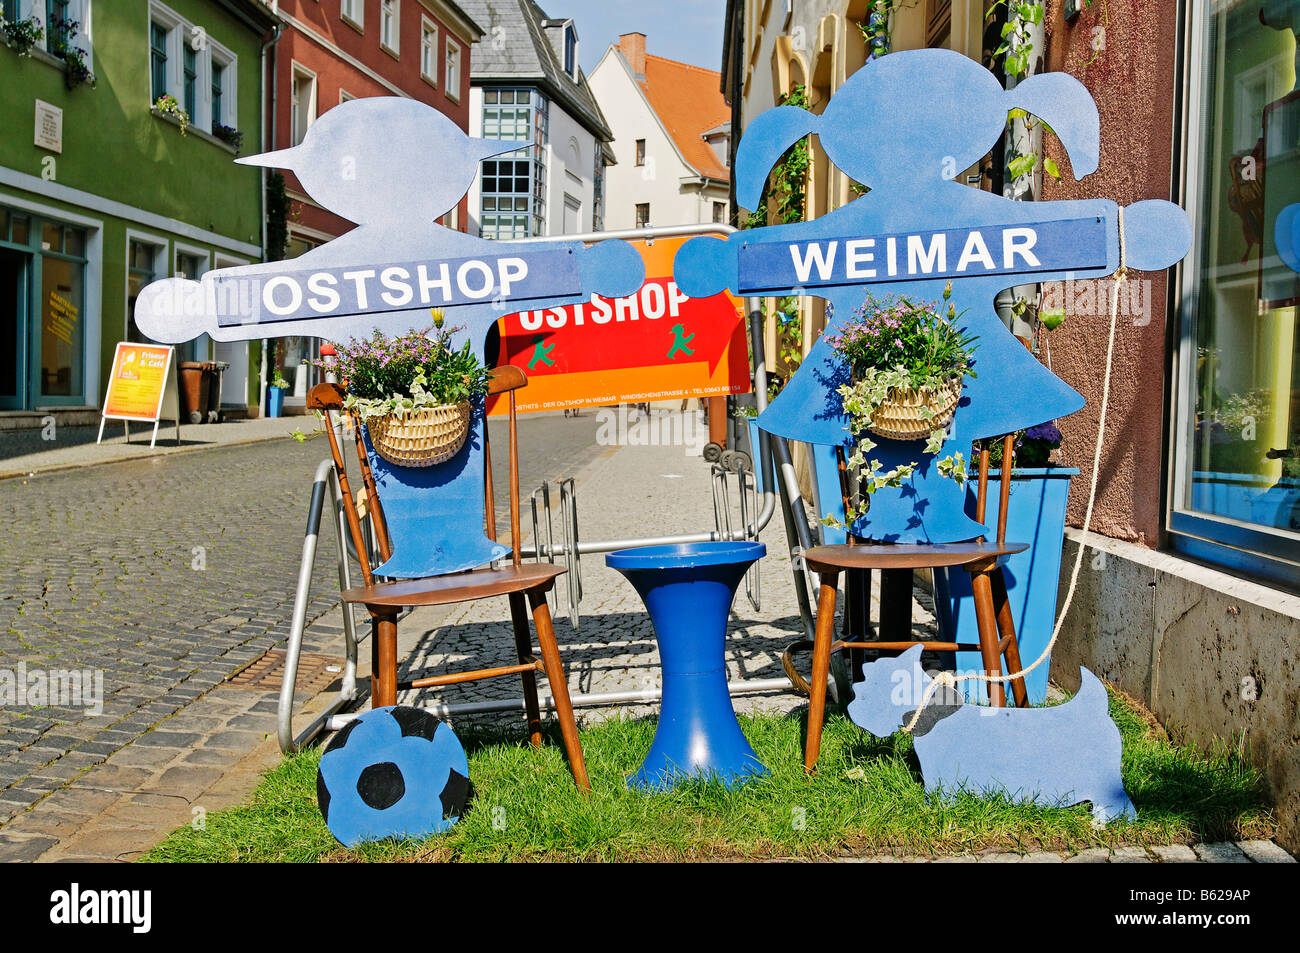 Ost-Shop, Ostdeutschland Shop in Weimar, Thüringen, Deutschland, Europa Stockfoto